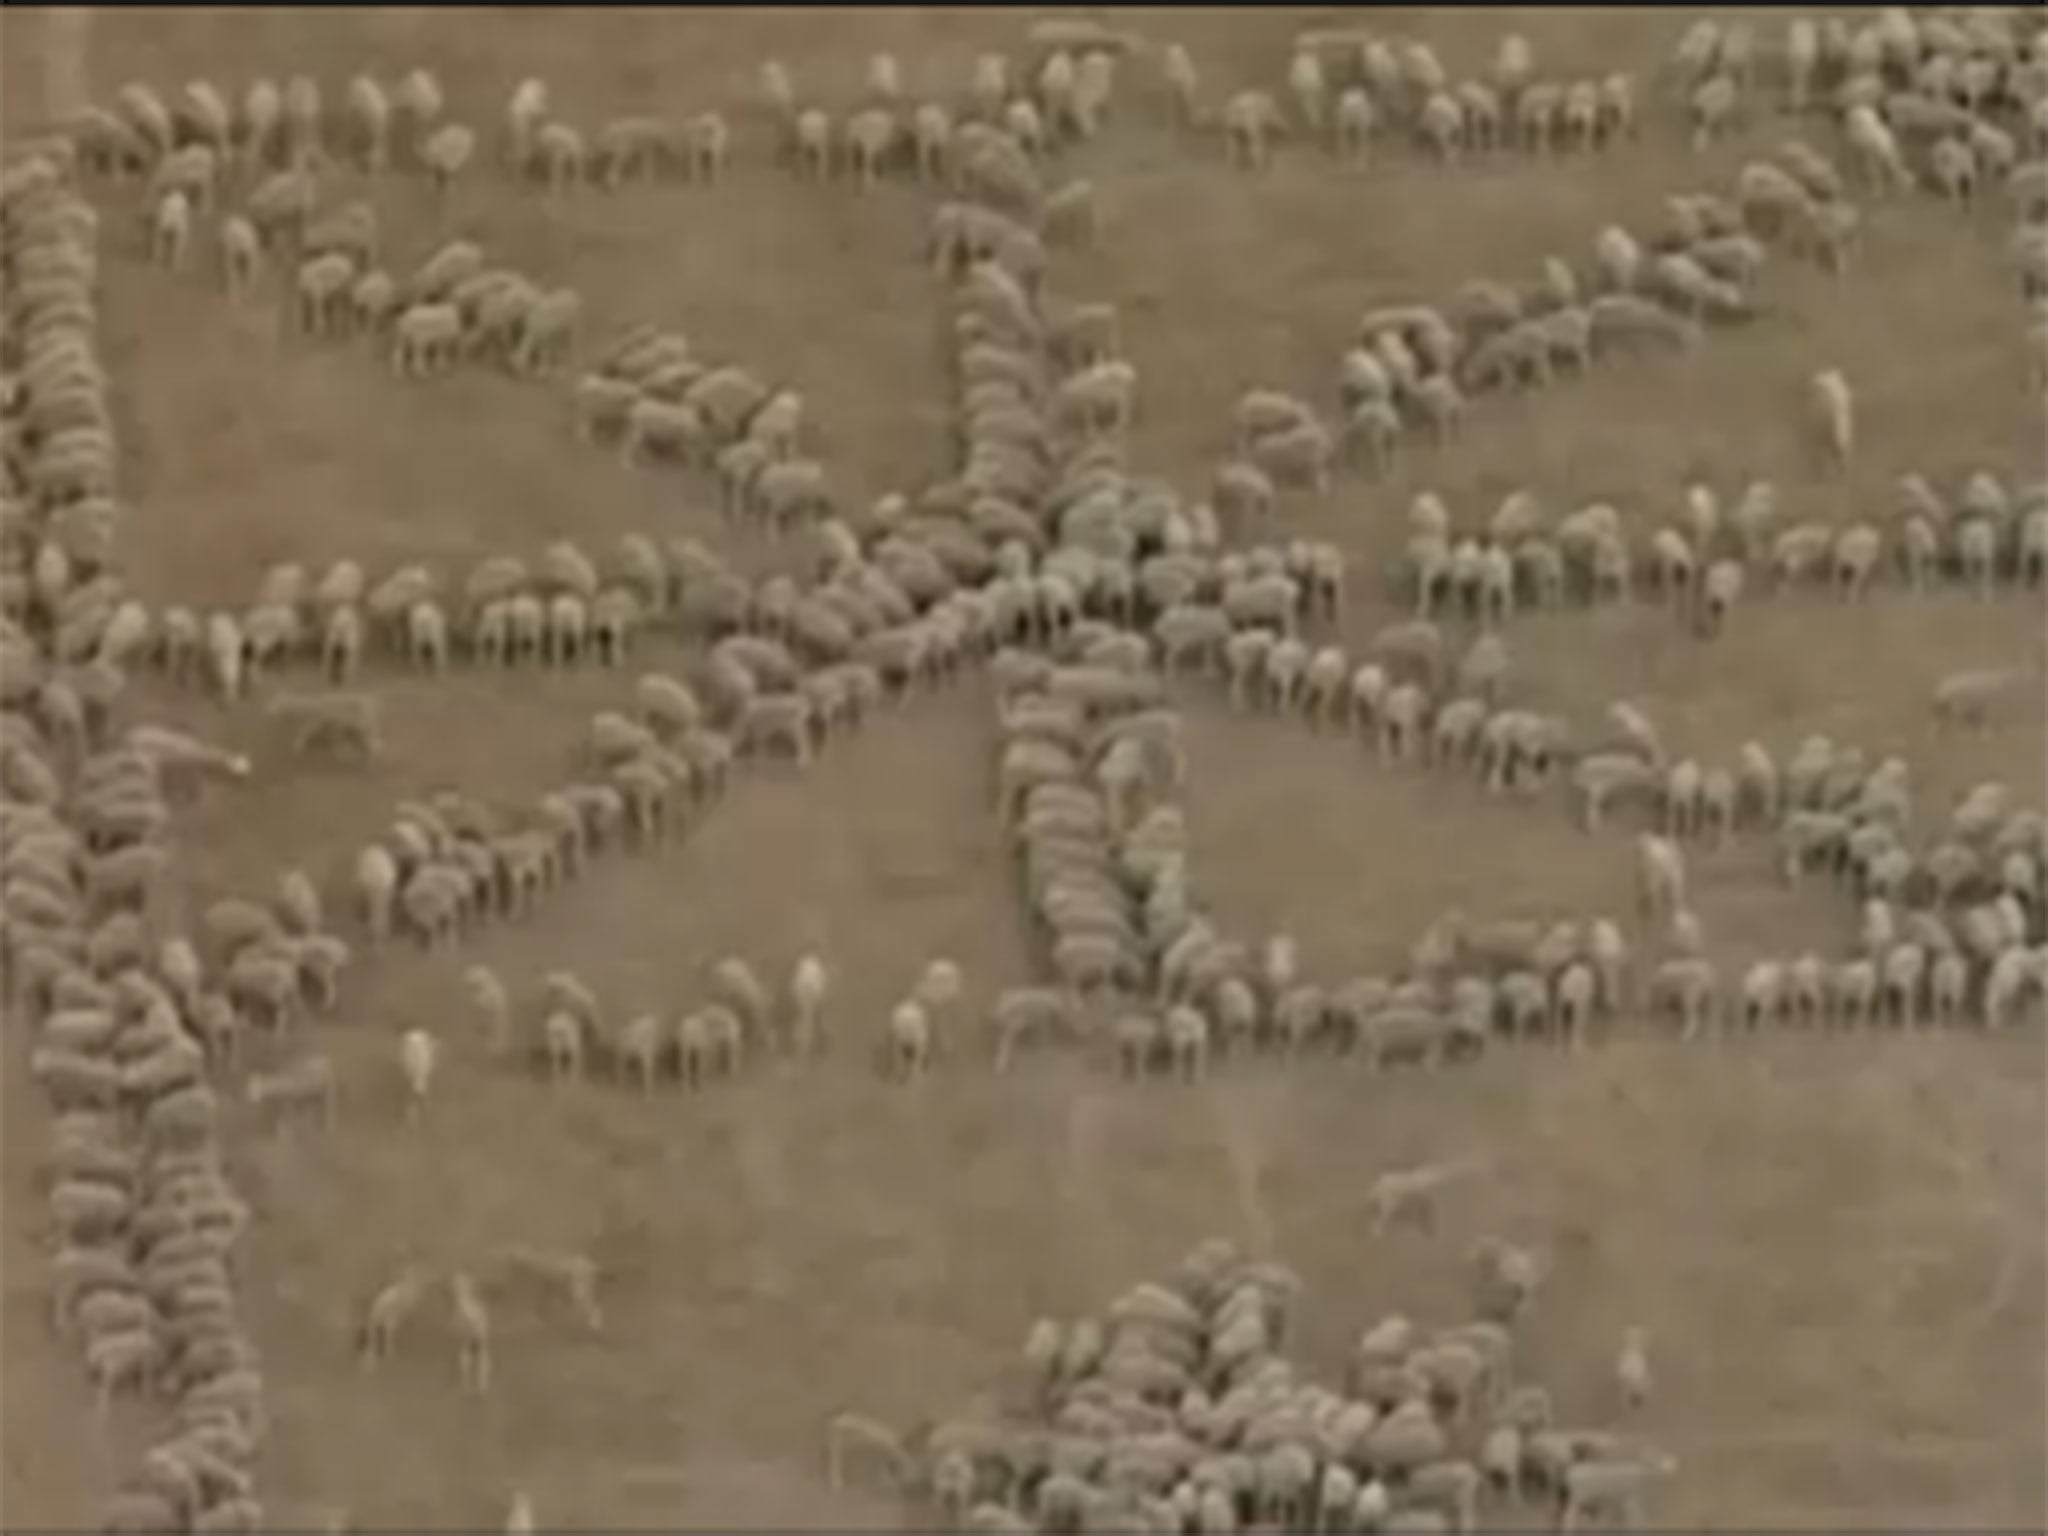 It took 1030 sheep to create the flag